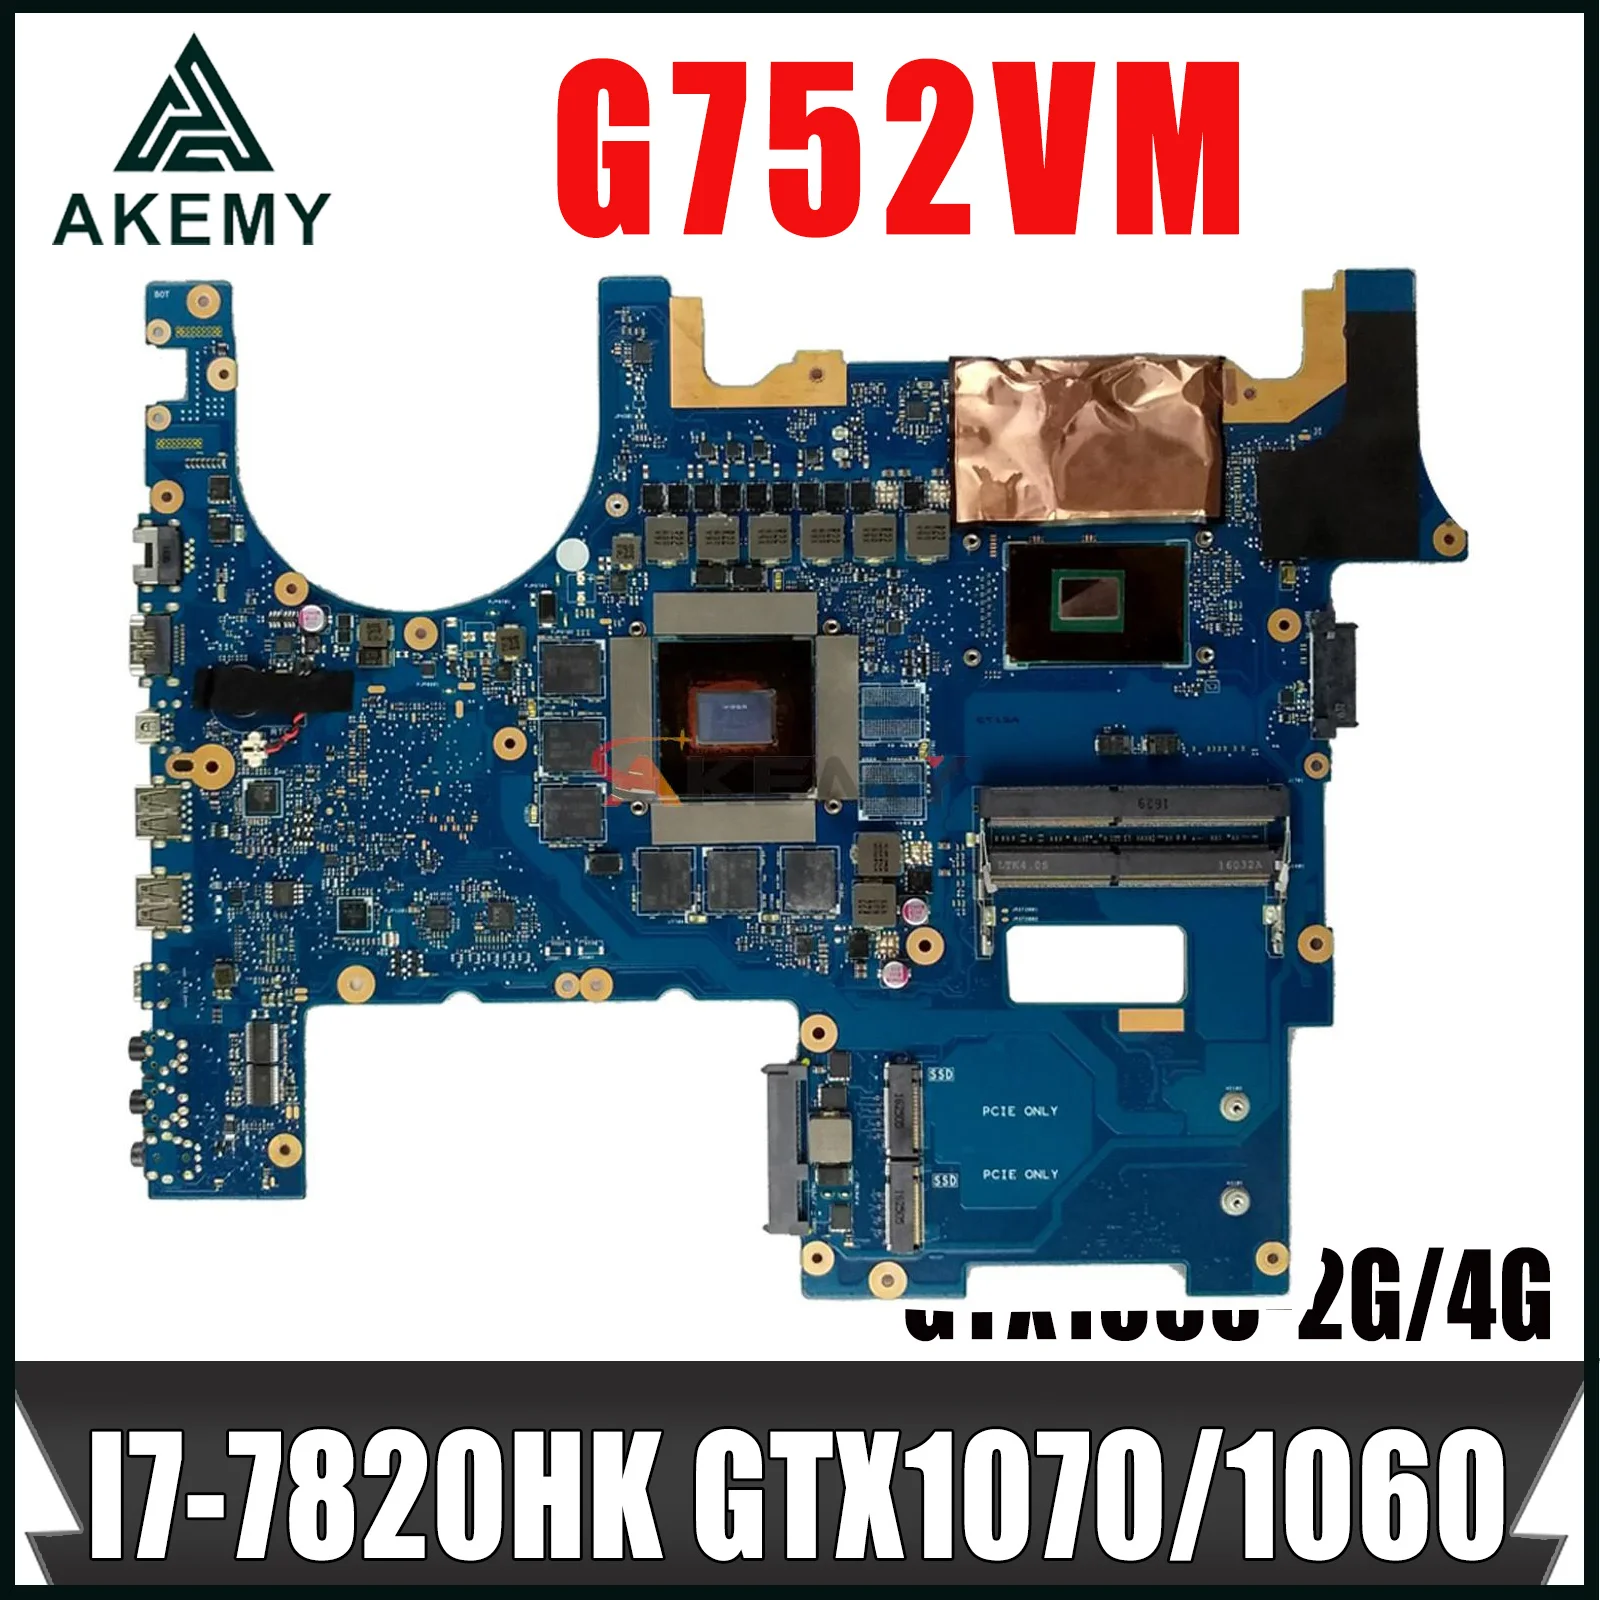 

G752VS материнская плата ASUS ROG G752V G752VSK G752VM, материнская плата для ноутбука